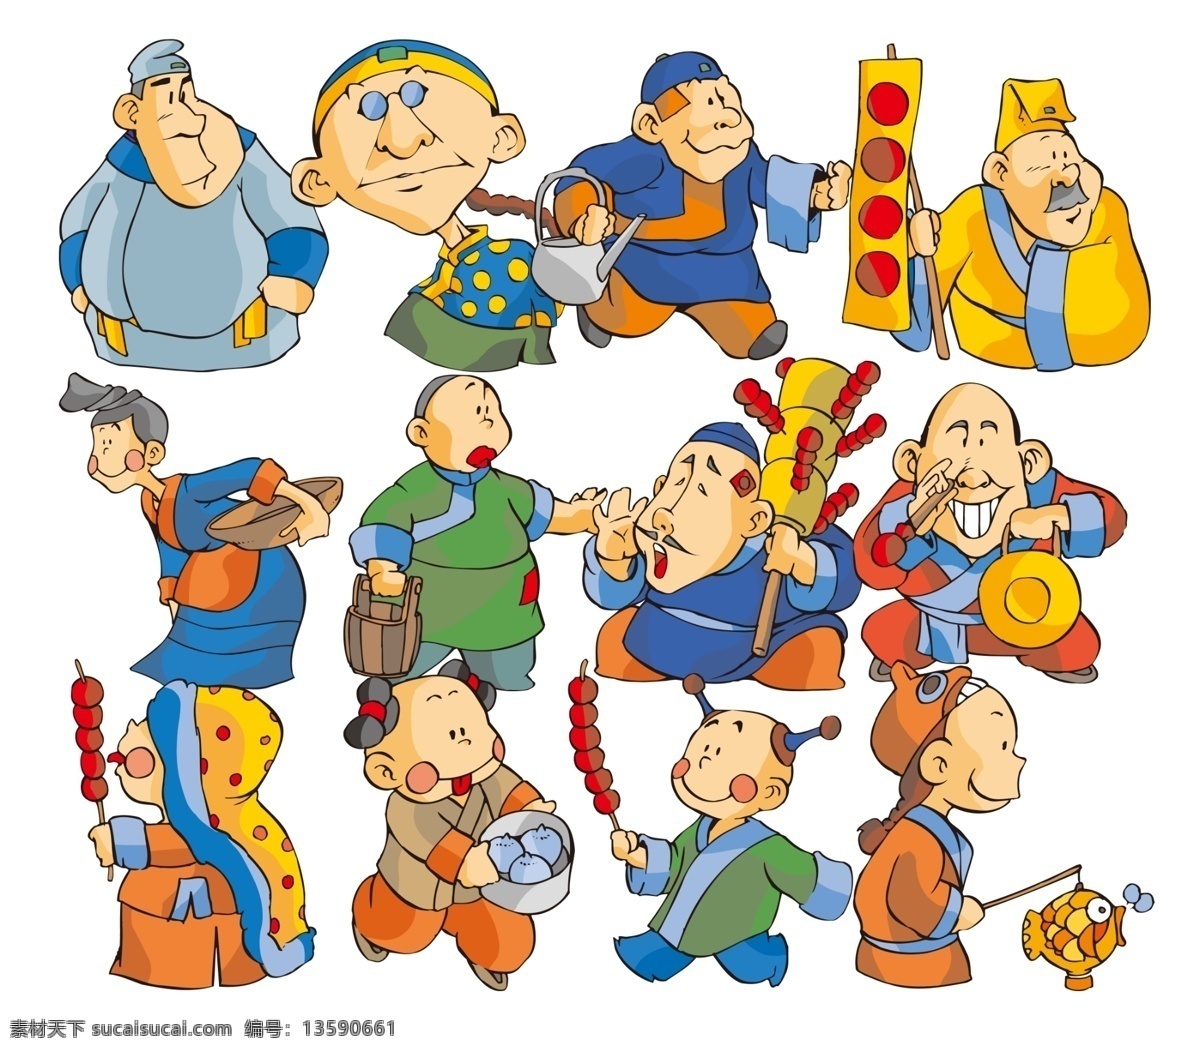 古代卡通人物 糖葫芦 古代 卡通人物 中国古代 大头人物 卡通 动漫 漫画 小孩 活泼 分层 人物 中国 风 动漫动画 动漫人物